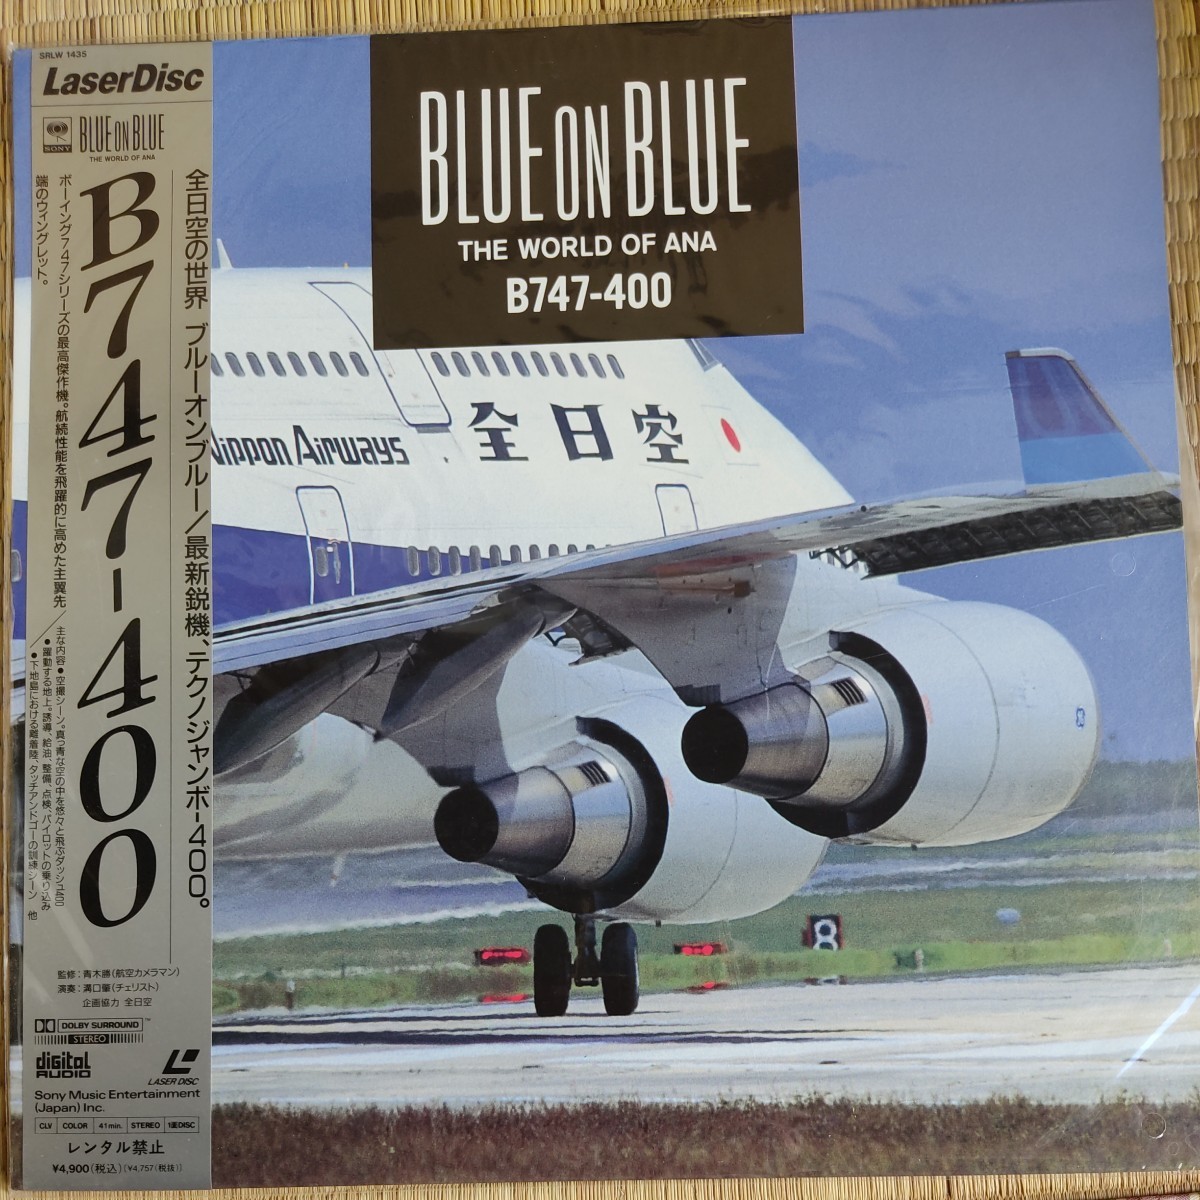 レーザーディスク／ザ・リアルフライト・ドキュメント、ザ・グレイトコックピット、B747-400 全日空の世界 ブルーオンブルーの画像8